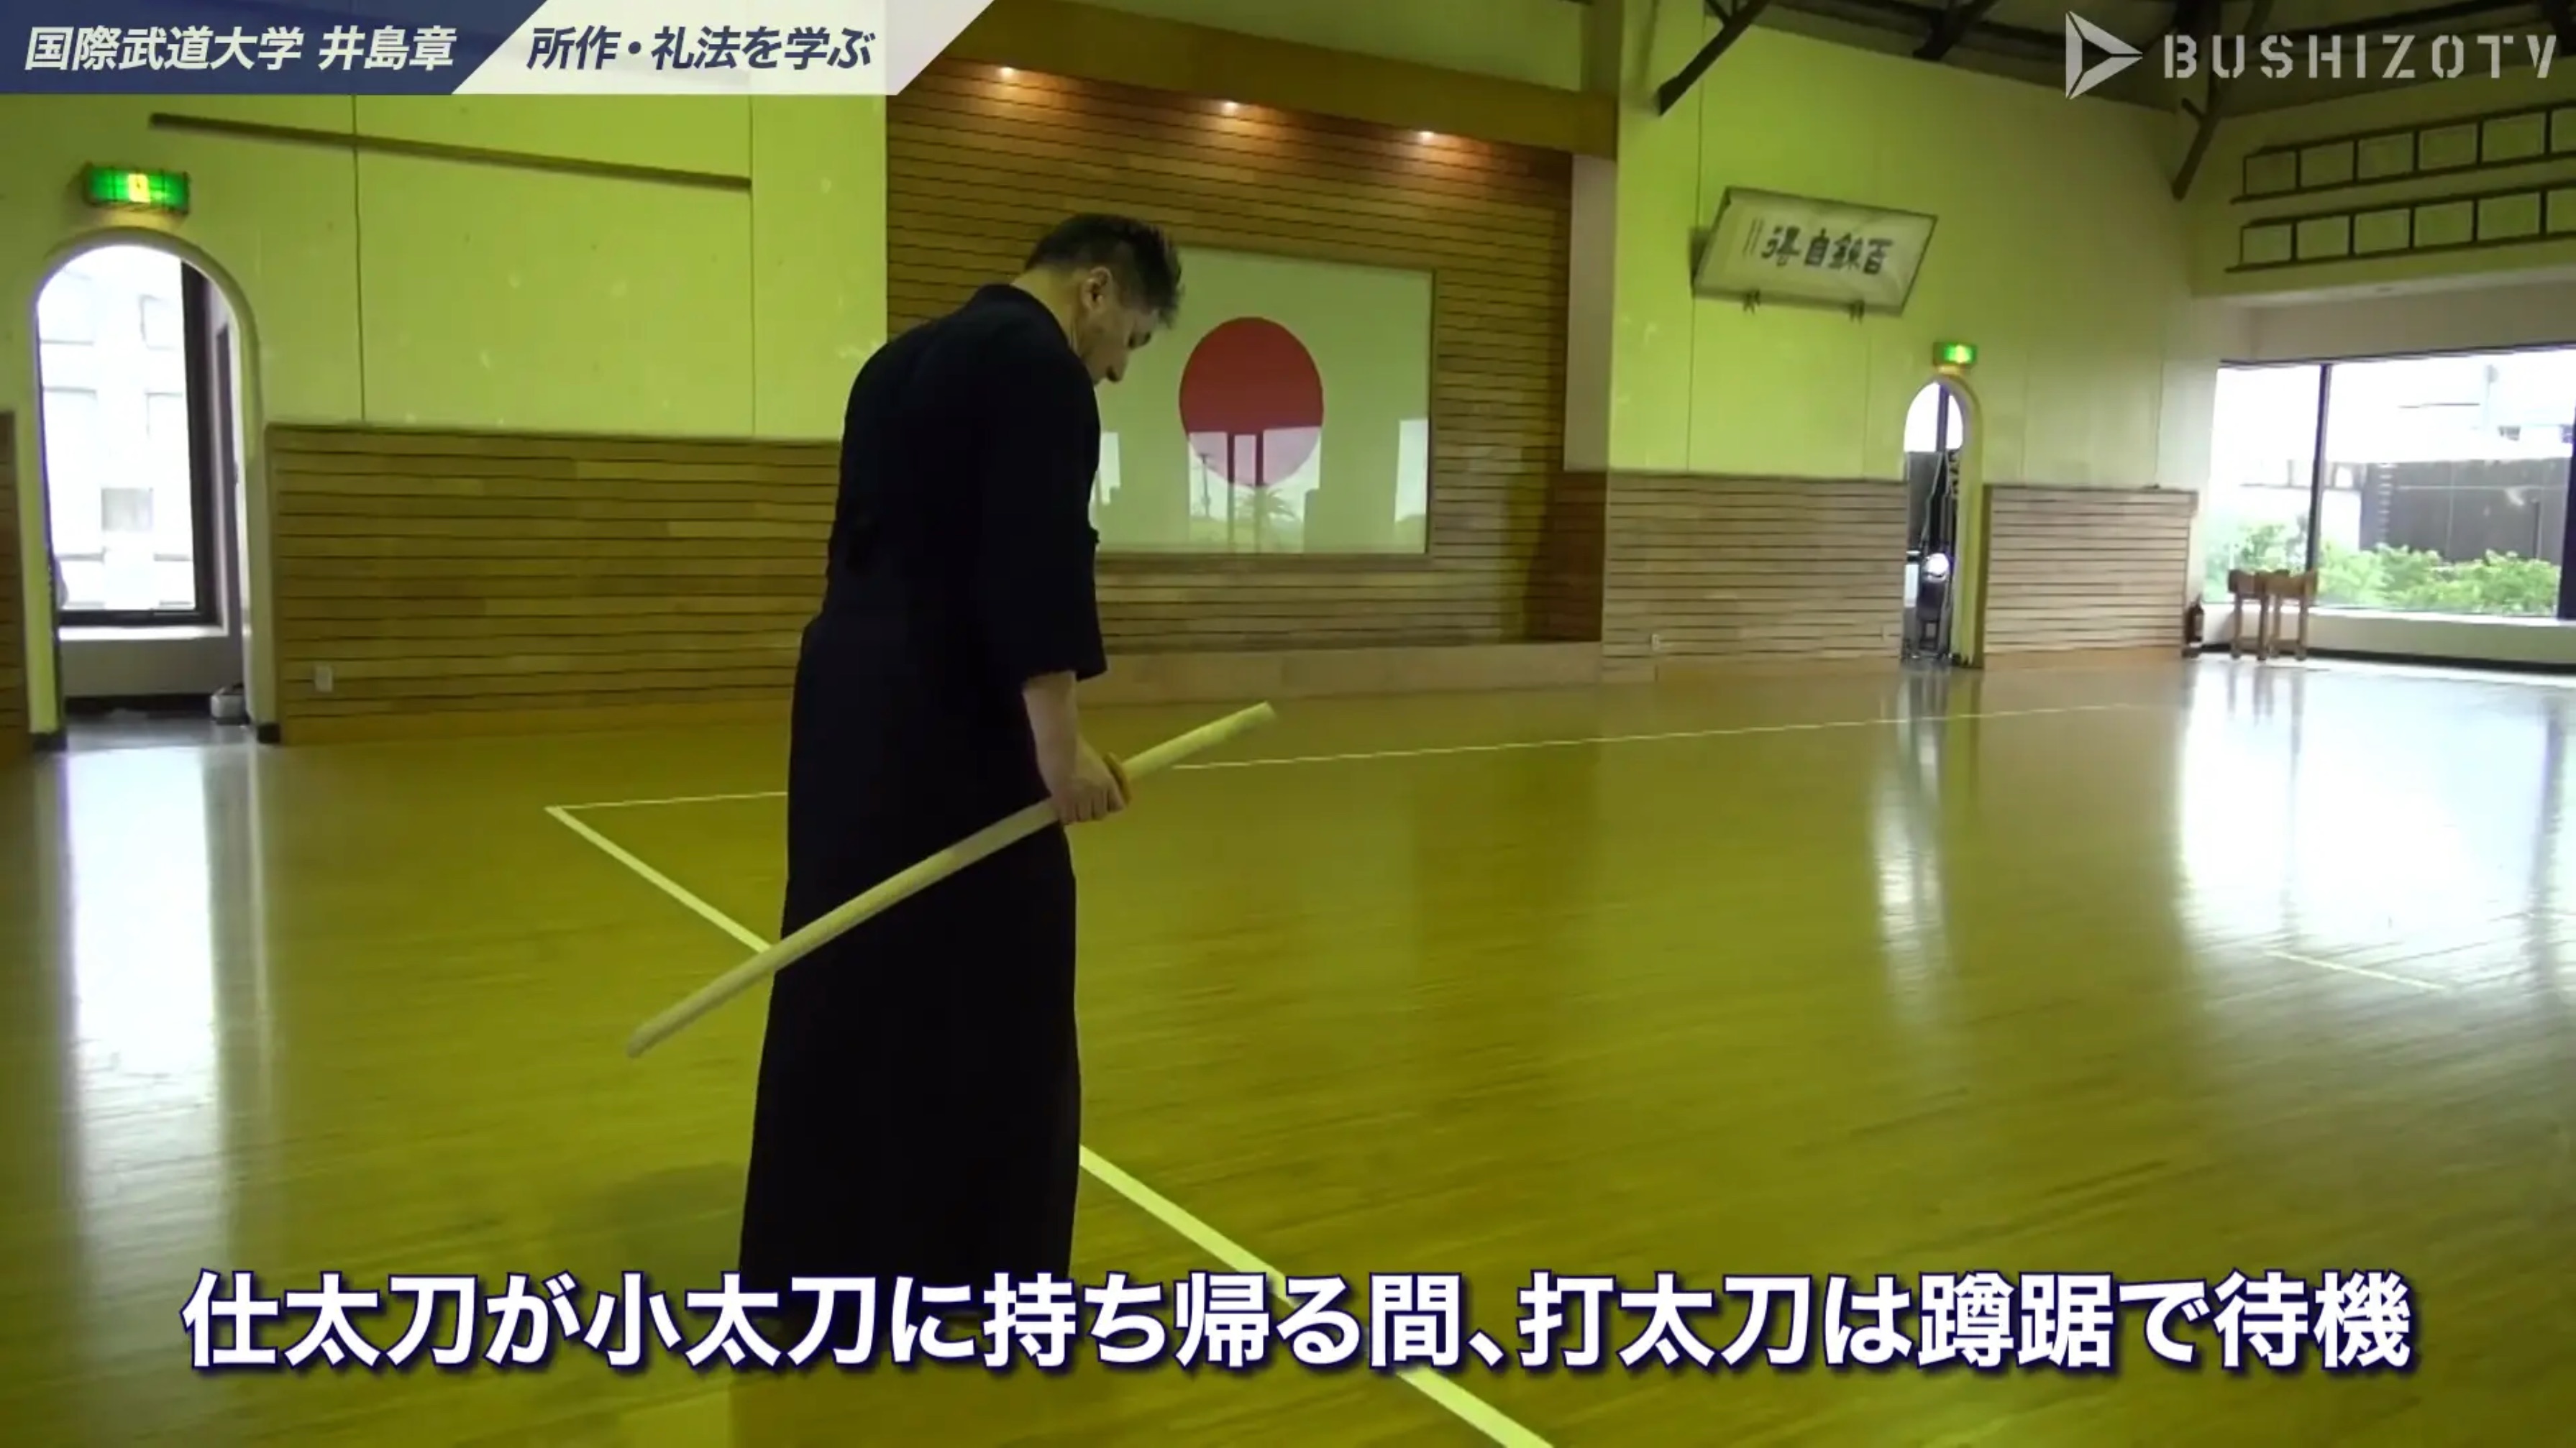 教士八段 井島章 日本剣道形 所作礼法を学ぶ 2 Bushizo Tv